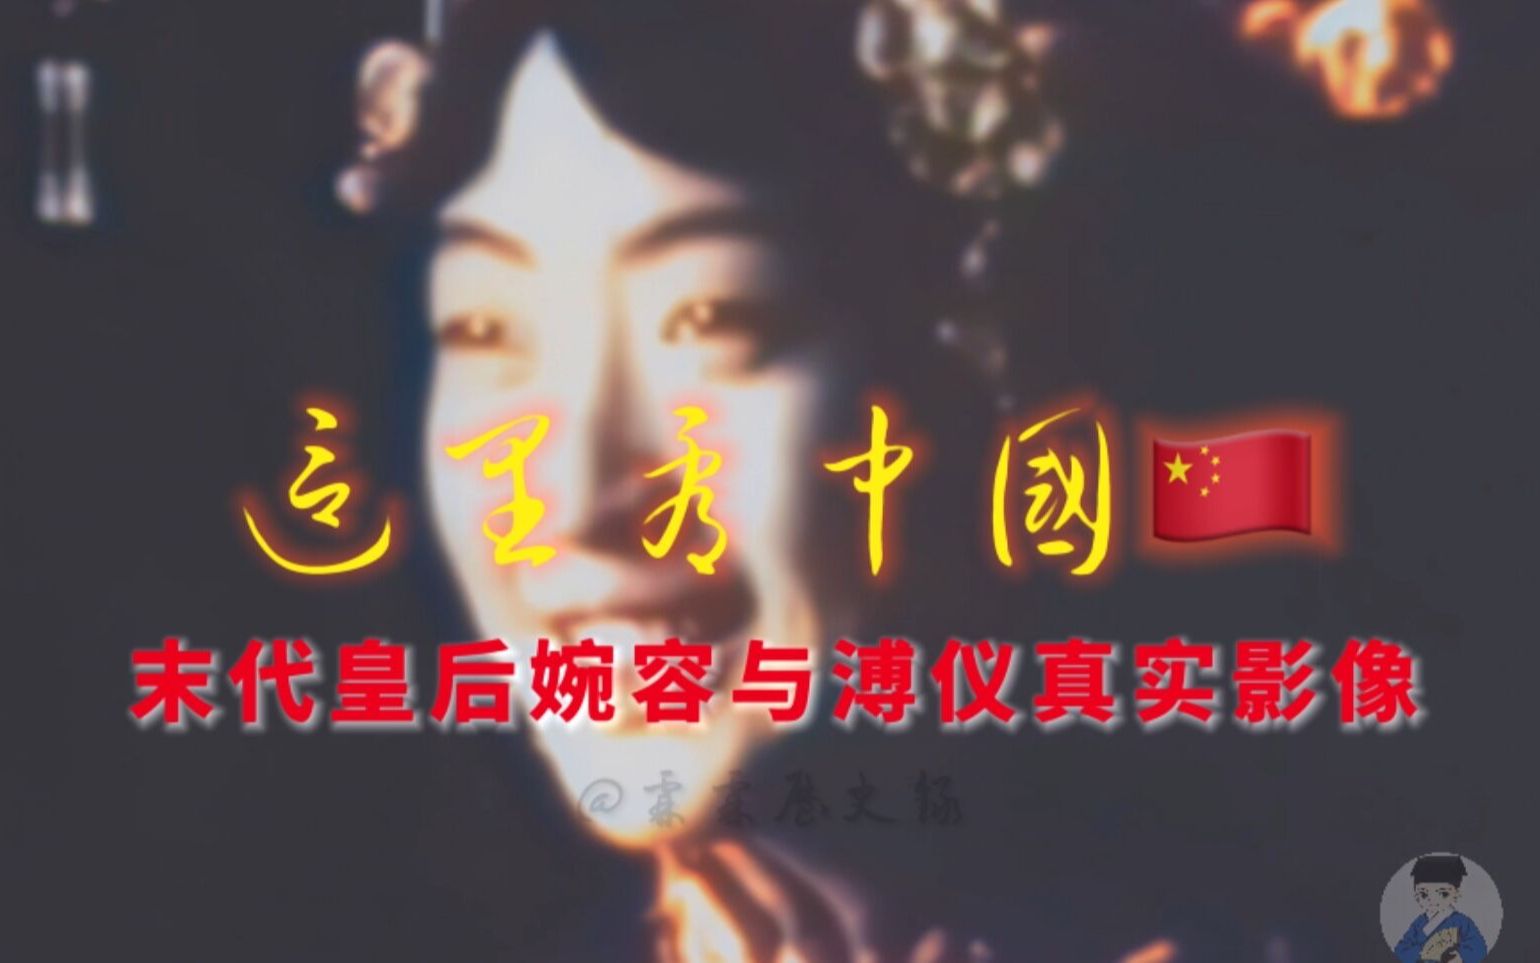 1924年清朝末代皇后婉容与末代皇帝溥仪真实动态影像